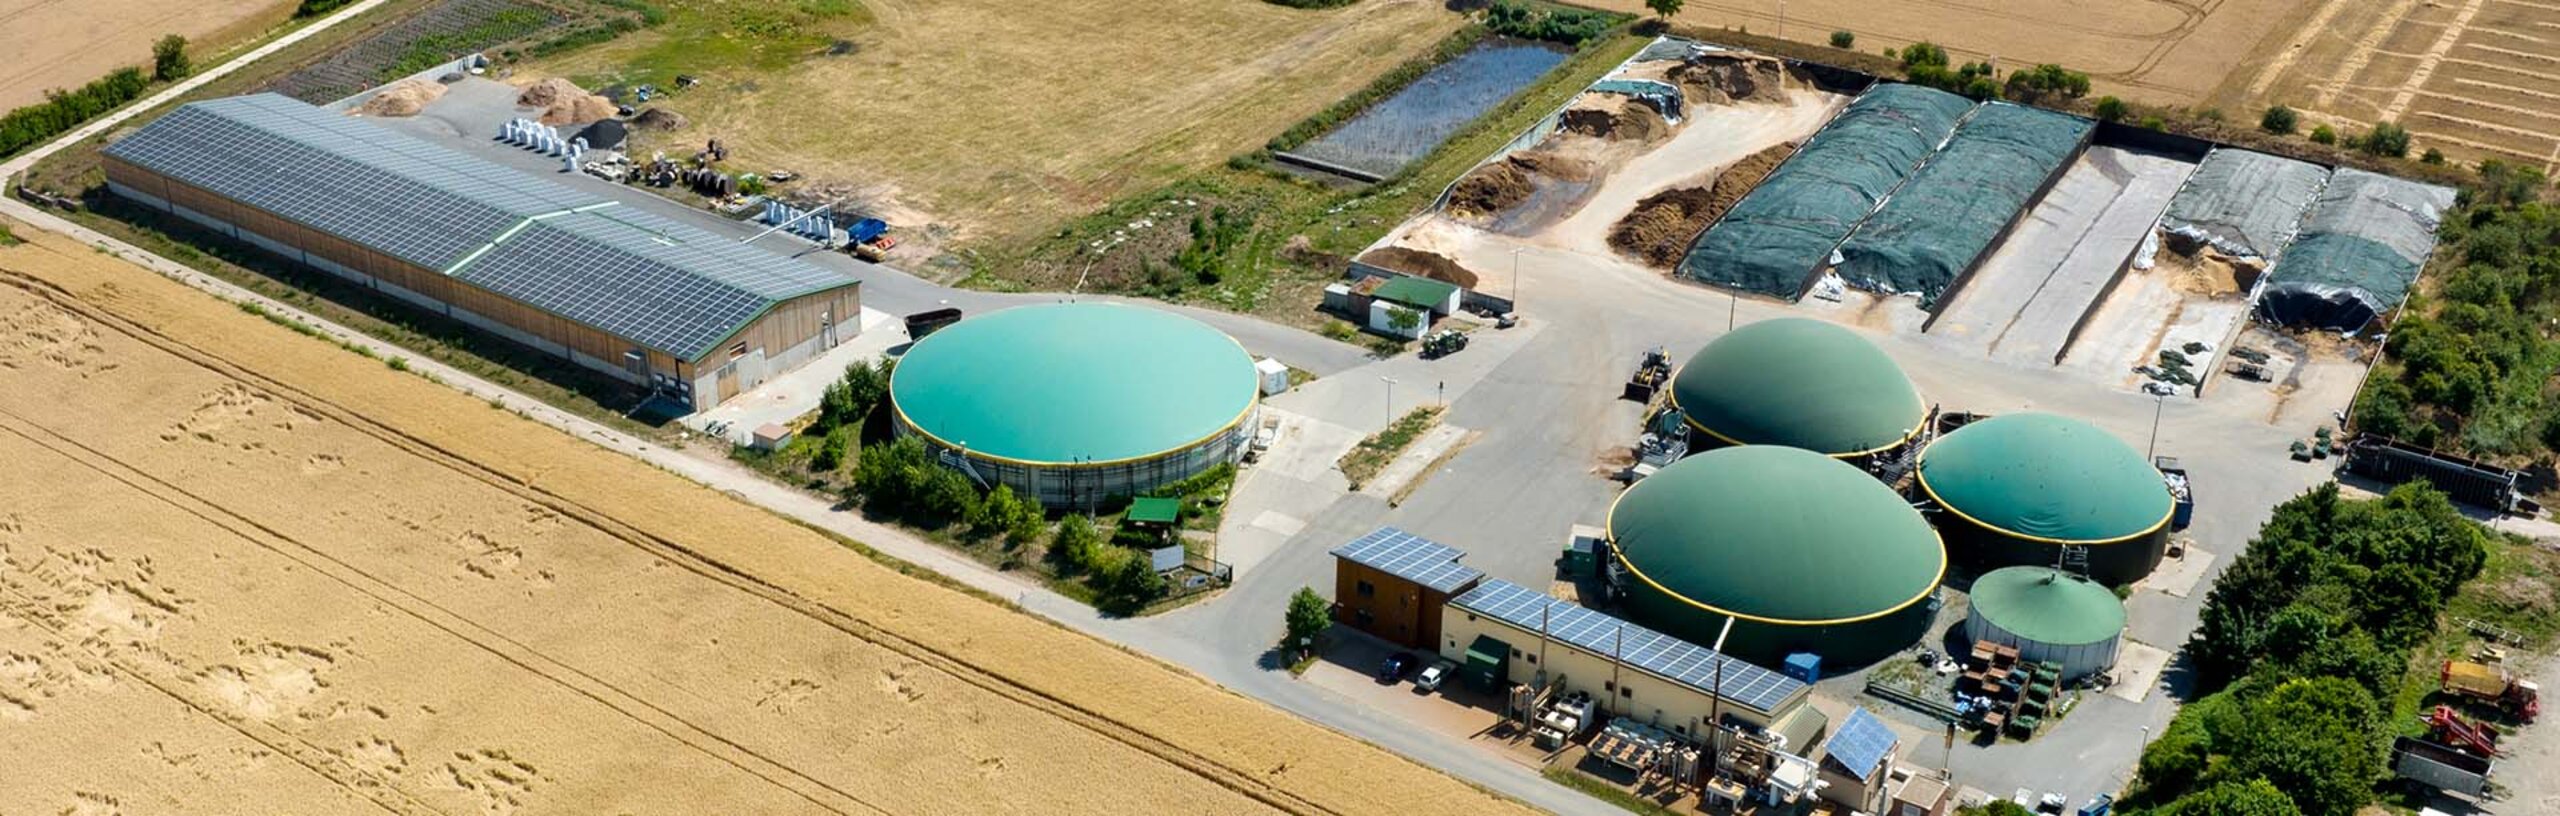 Eine Luftbildaufnahme einer Biogasanlage, die von landwirtschaftlicher Fläche umgeben ist